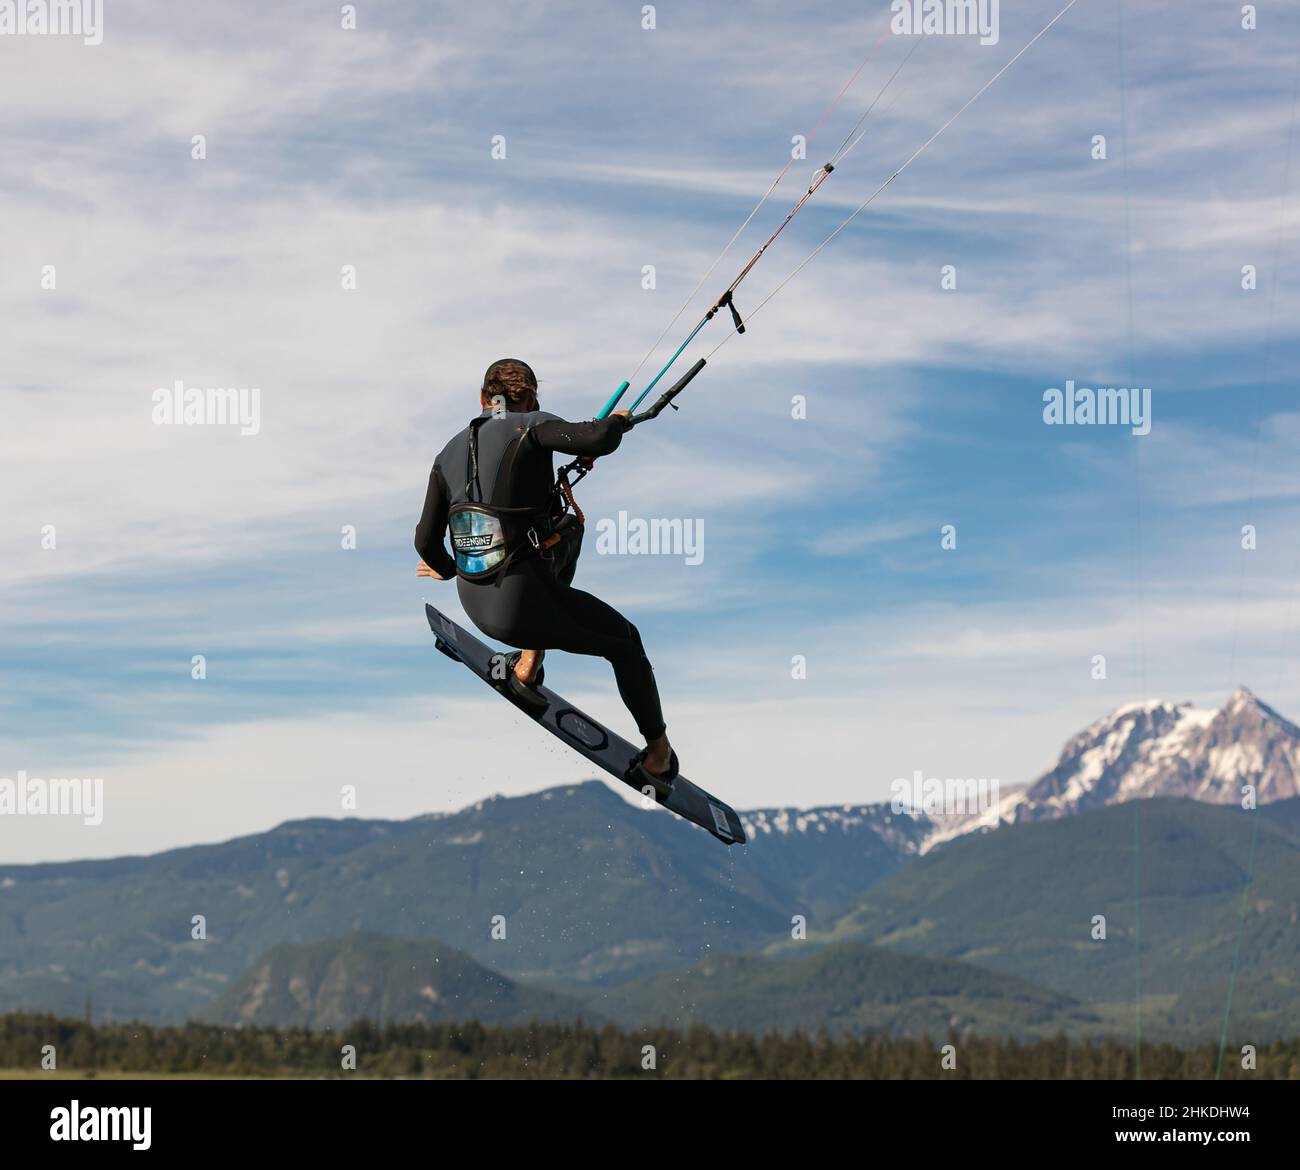 Kite surfeur vole au-dessus du ciel, des montagnes. Kitesurfer saute au-dessus de l'eau lors d'une journée ensoleillée d'été. Homme hobbies et loisirs kitesurf, kiteboarding-Ju Banque D'Images